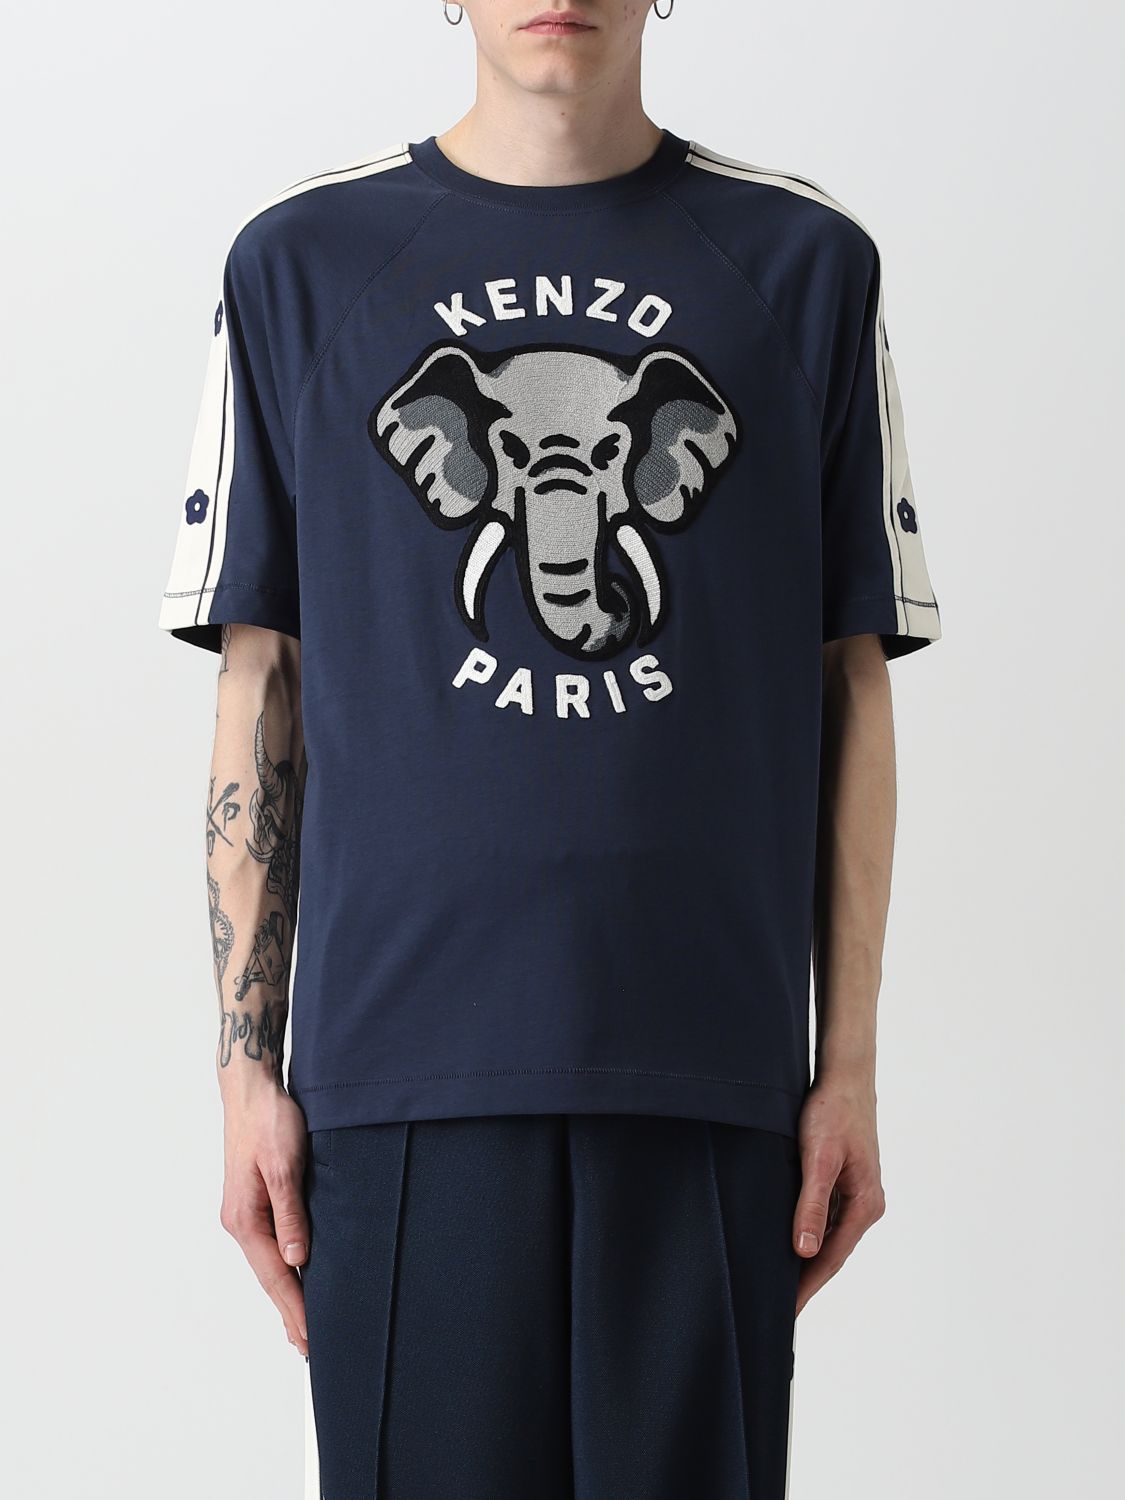 T-shirt Kenzo: T-shirt Elephant Kenzo in cotone blue 1